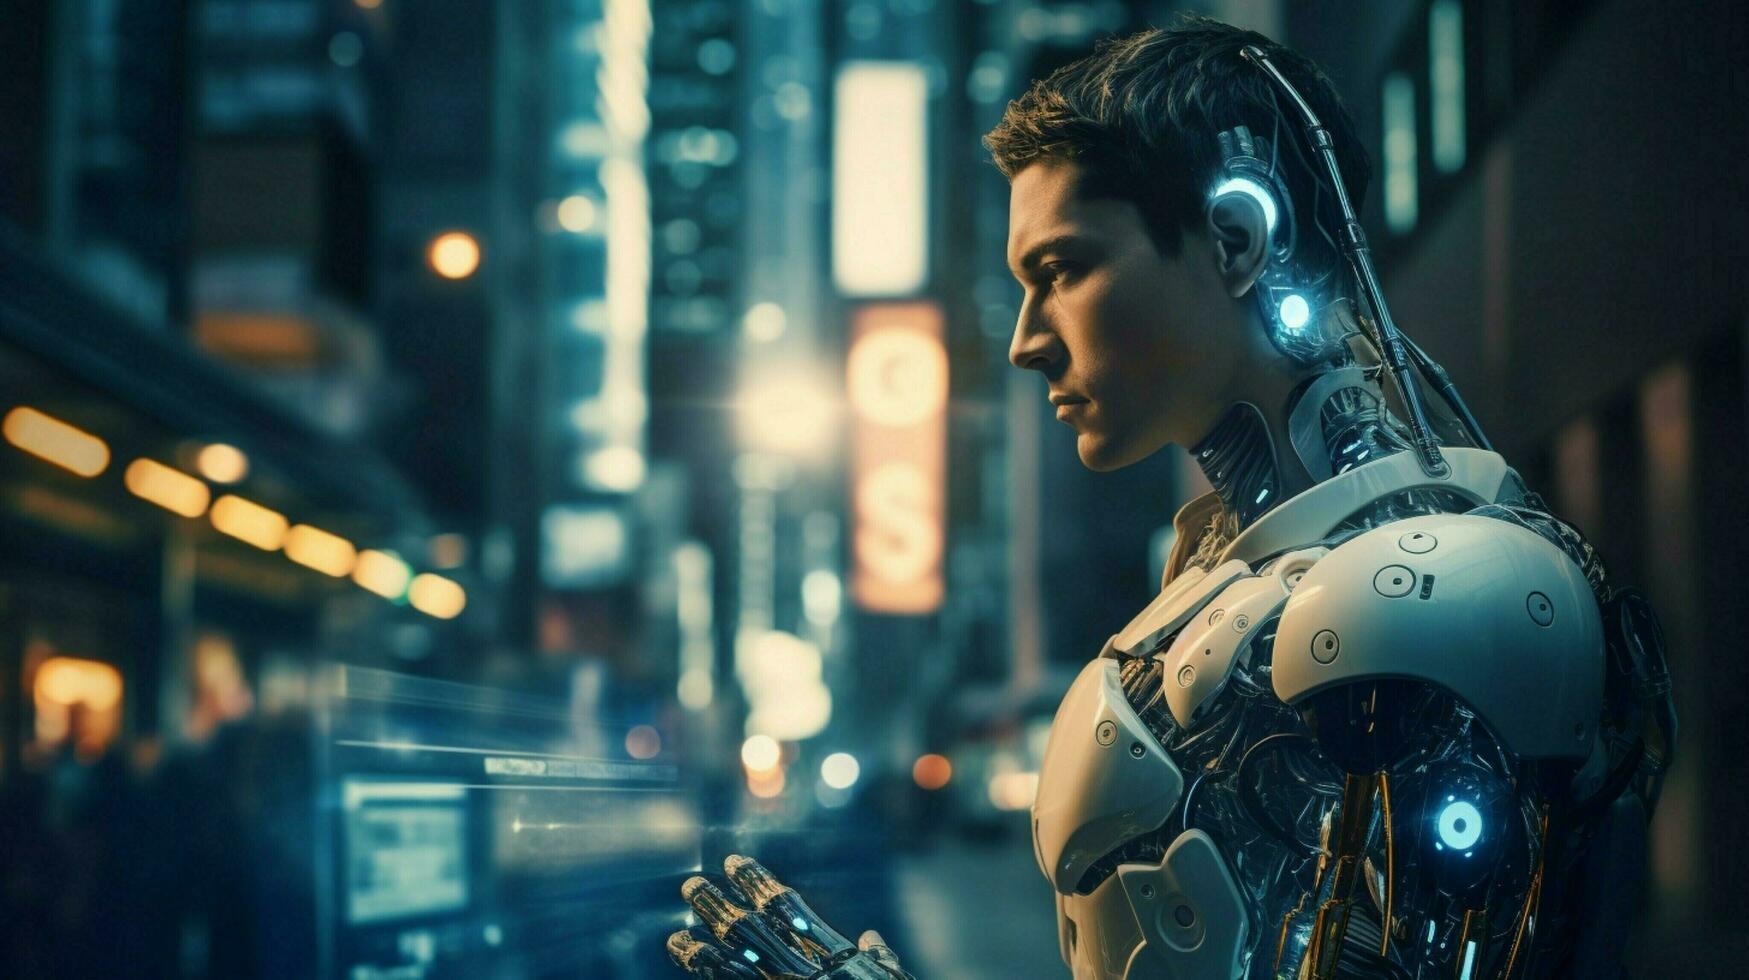 futuristisch Cyborg mit Roboter Arm steht beleuchtet foto